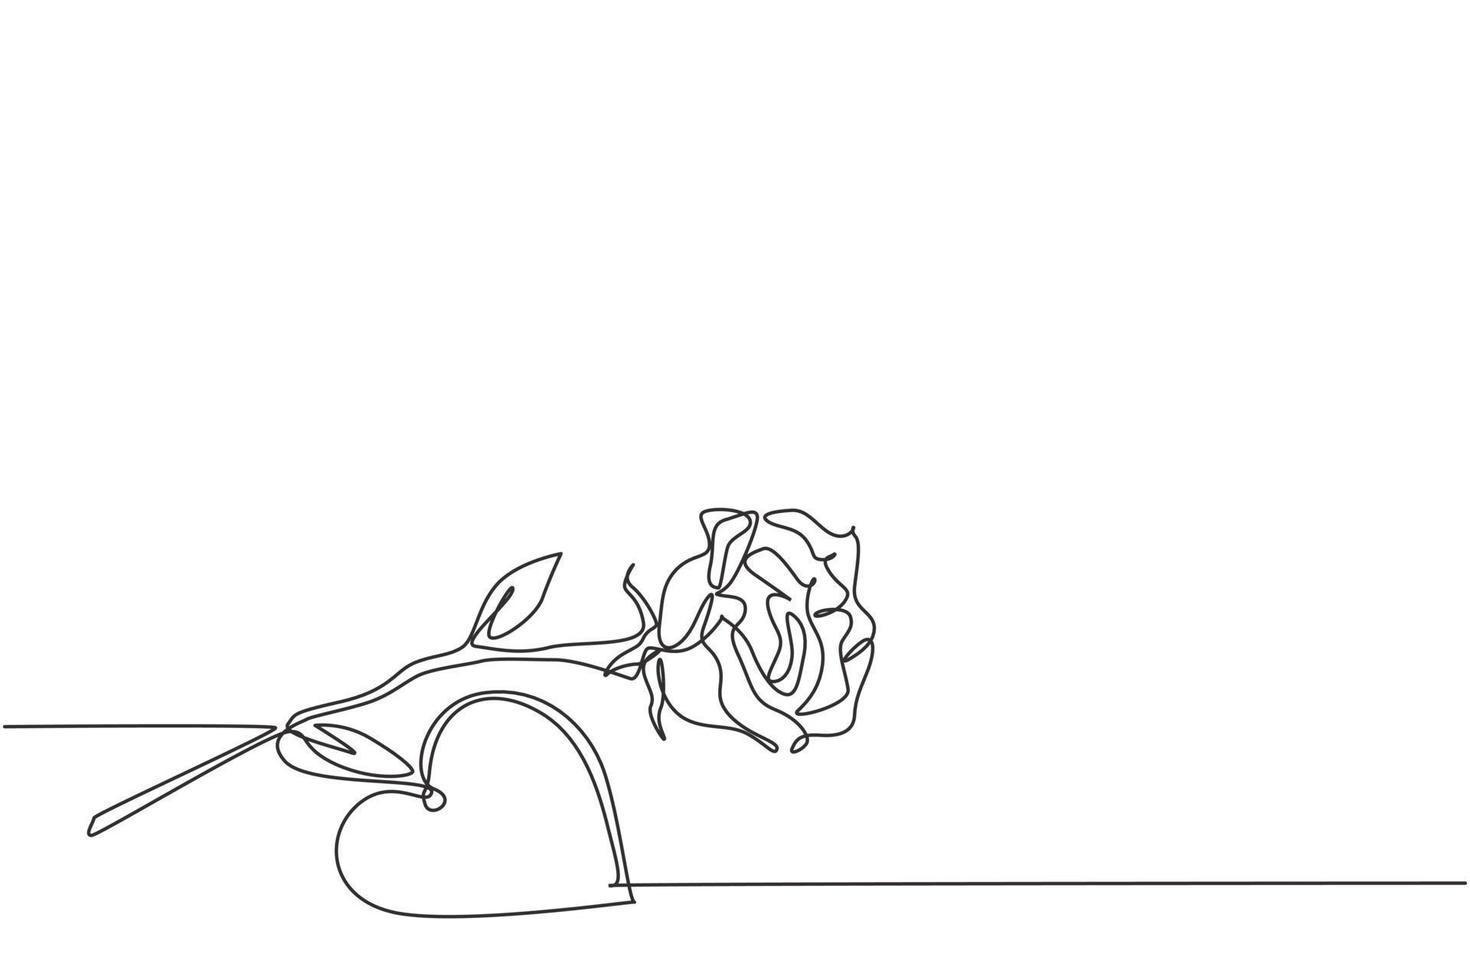 eine durchgehende strichzeichnung von frischer romantischer schöner rosenblüten- und herzformgrußkarte. trendige Einladung, Logo, Banner, Plakatkonzept Single Line Draw Design Vektorgrafik Illustration vektor